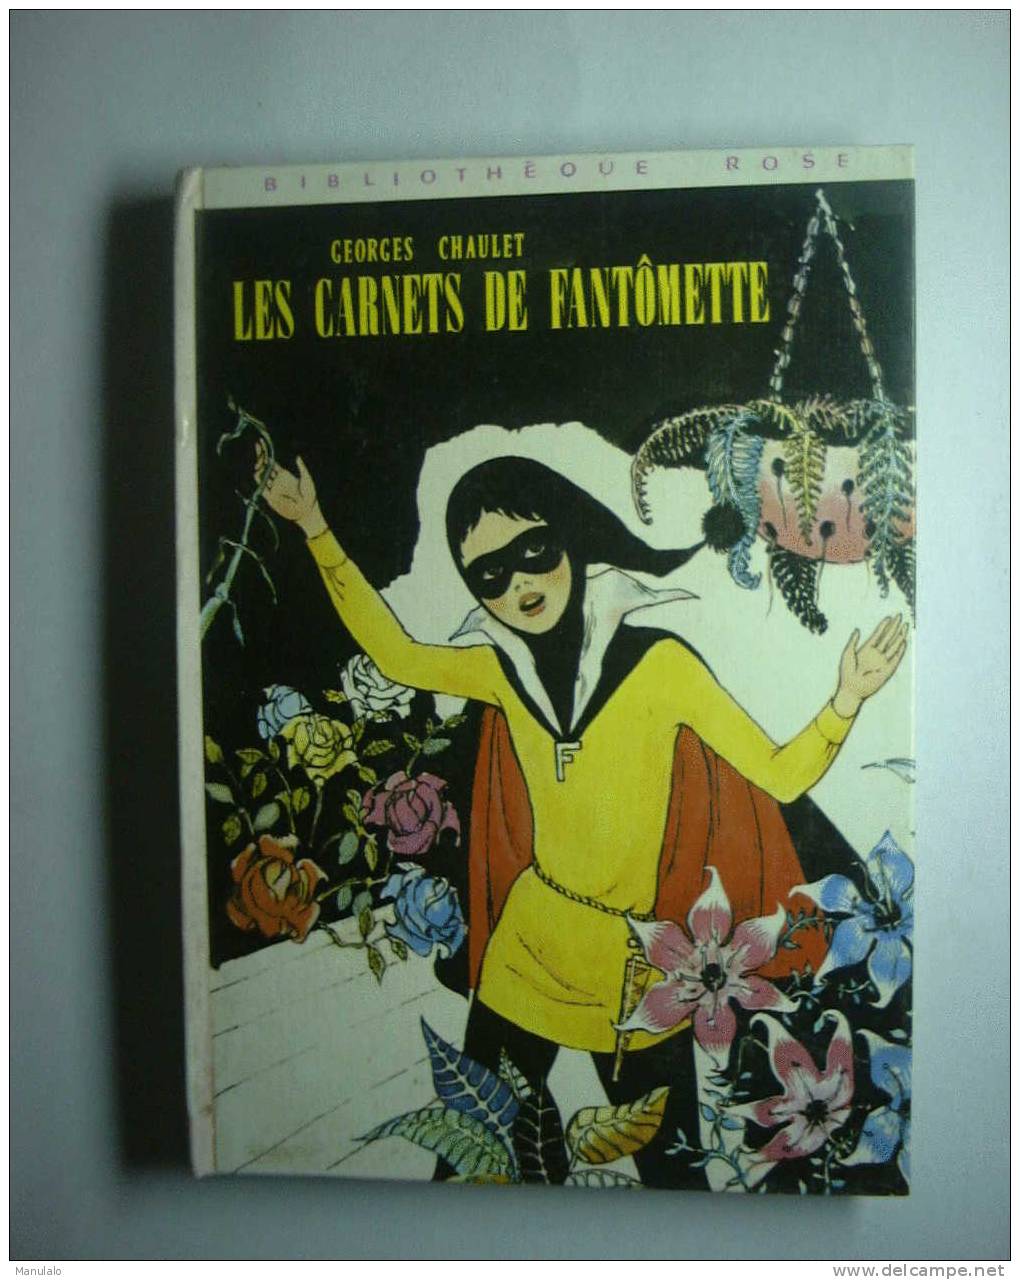 Livre Bibliothèque Rose Hachette De Georges Chaulet " Les Carnets De Fantômette " Année 1979 - Bibliotheque Rose